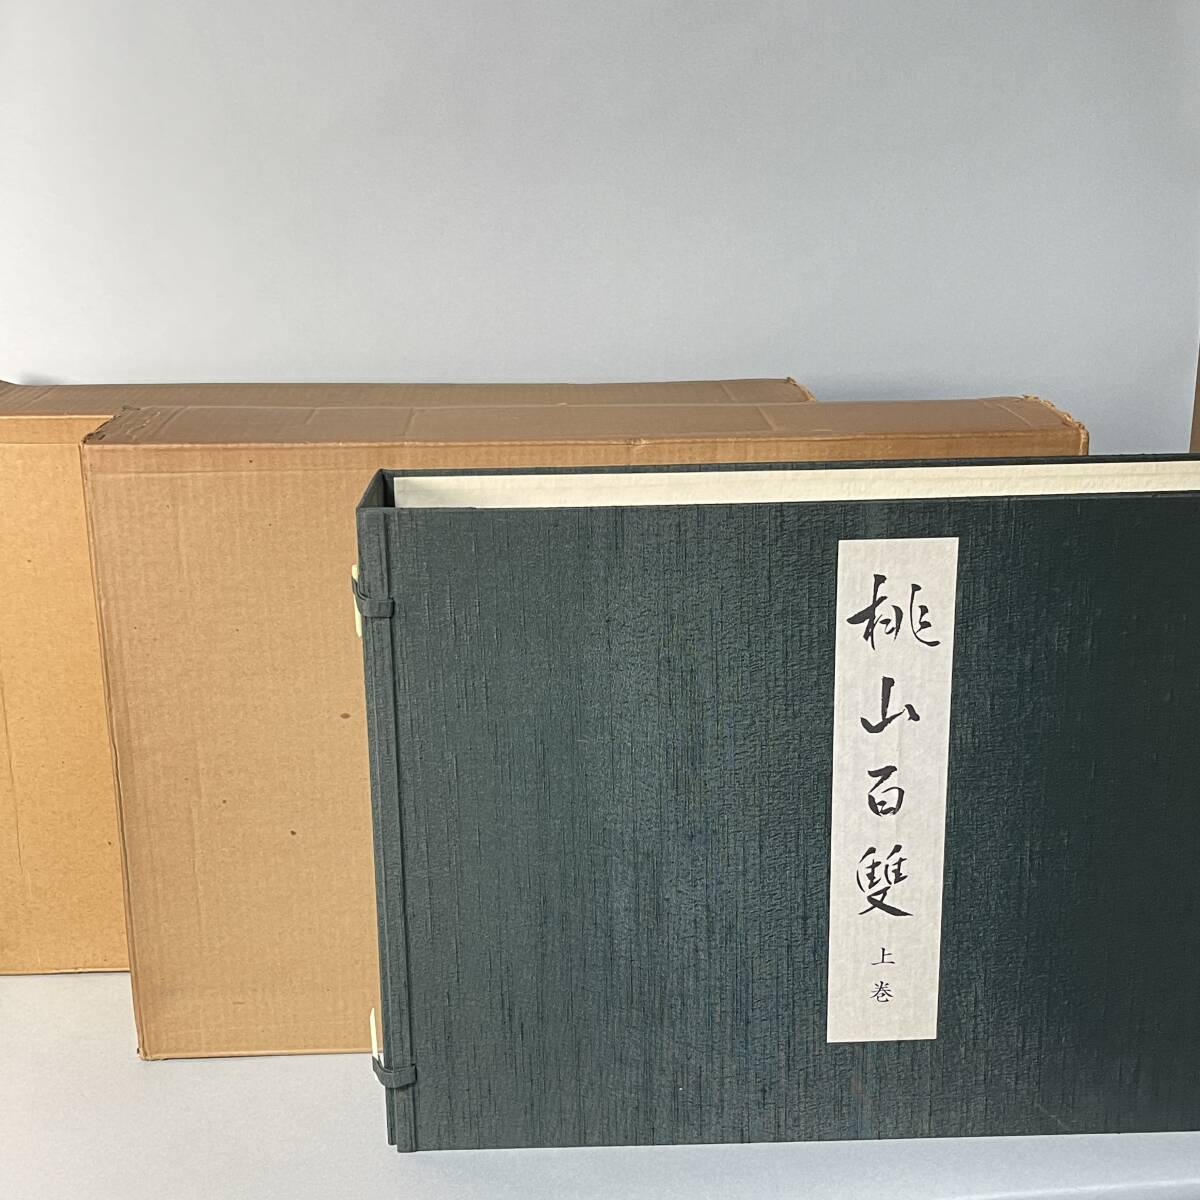 मोमोयामा हयाकुसो खंड 1 और 2 बड़ी पुस्तक सूची 500 प्रतियों तक सीमित फ़ूजी कला 1975 में प्रकाशित फ़ुशिमी कैसल मोमोयामा कैसल फोल्डिंग स्क्रीन पेंटिंग 300, 000 येन मोमोयामा हयाकुसो B3, चित्रकारी, कला पुस्तक, संग्रह, सूची